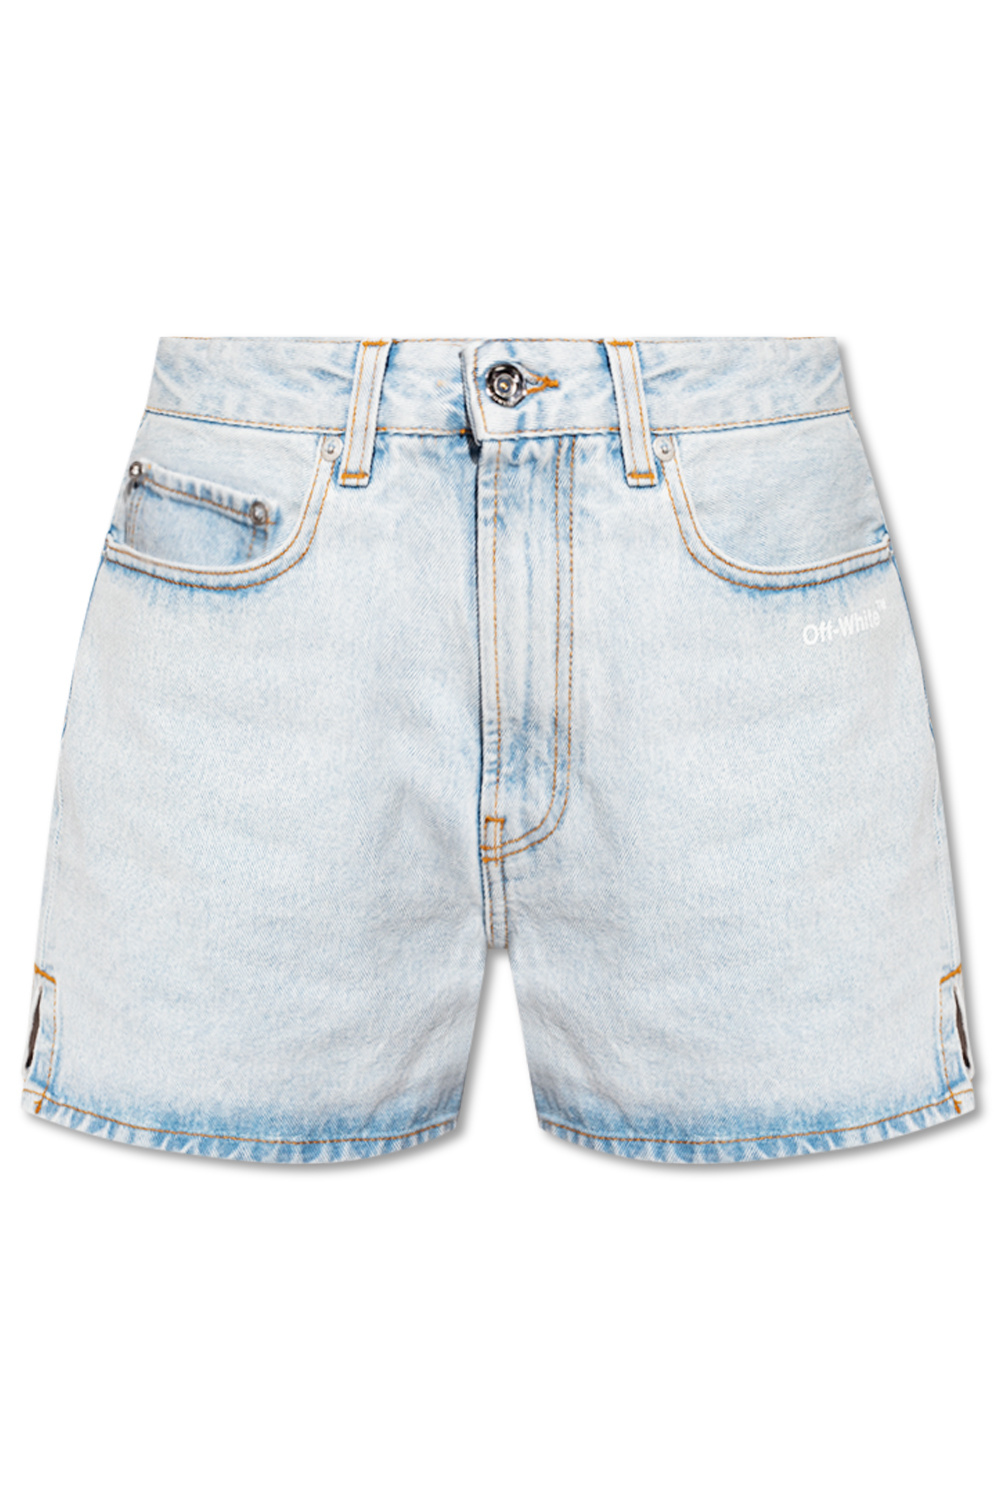 Off-White Kids logo-print denim shorts - Blue